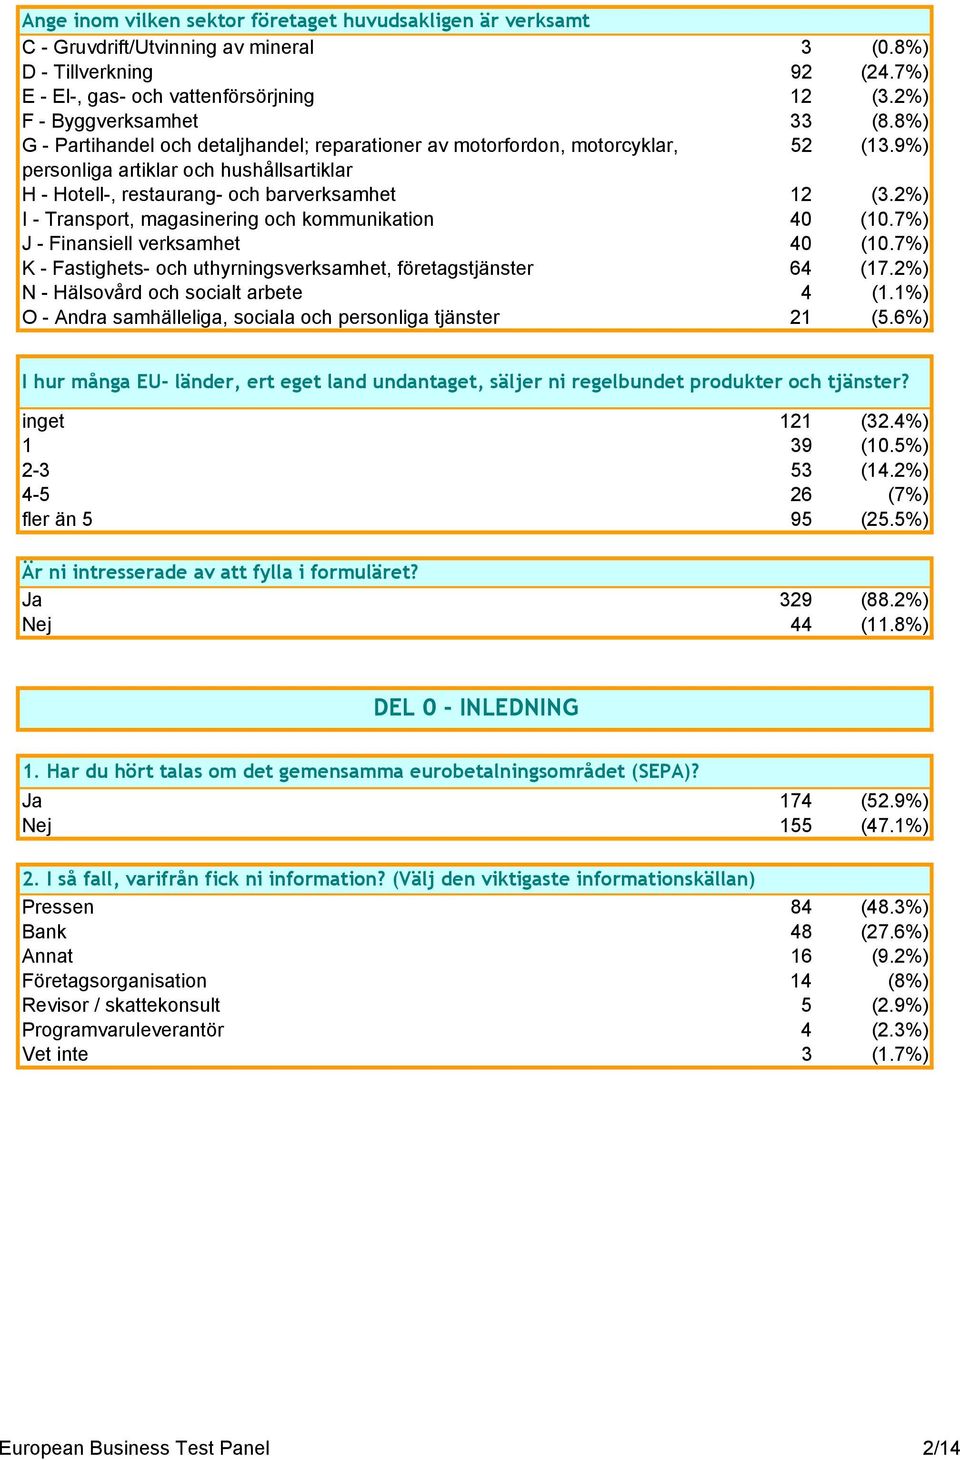 9%) personliga artiklar och hushållsartiklar H - Hotell-, restaurang- och barverksamhet 12 (3.2%) I - Transport, magasinering och kommunikation 40 (10.7%) J - Finansiell verksamhet 40 (10.